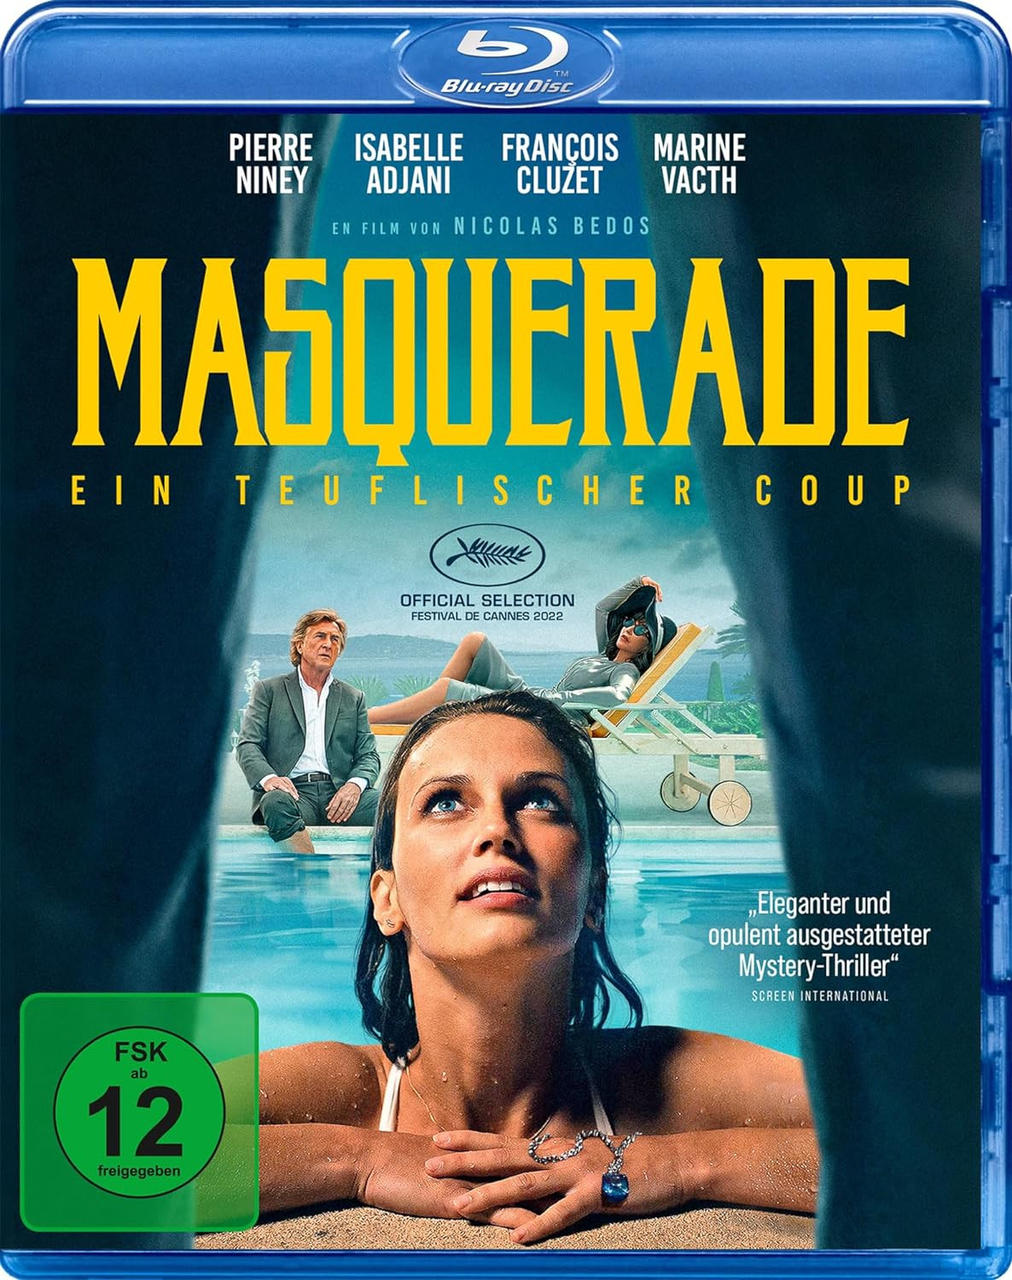 Masquerade - Coup Blu-ray Ein teuflischer